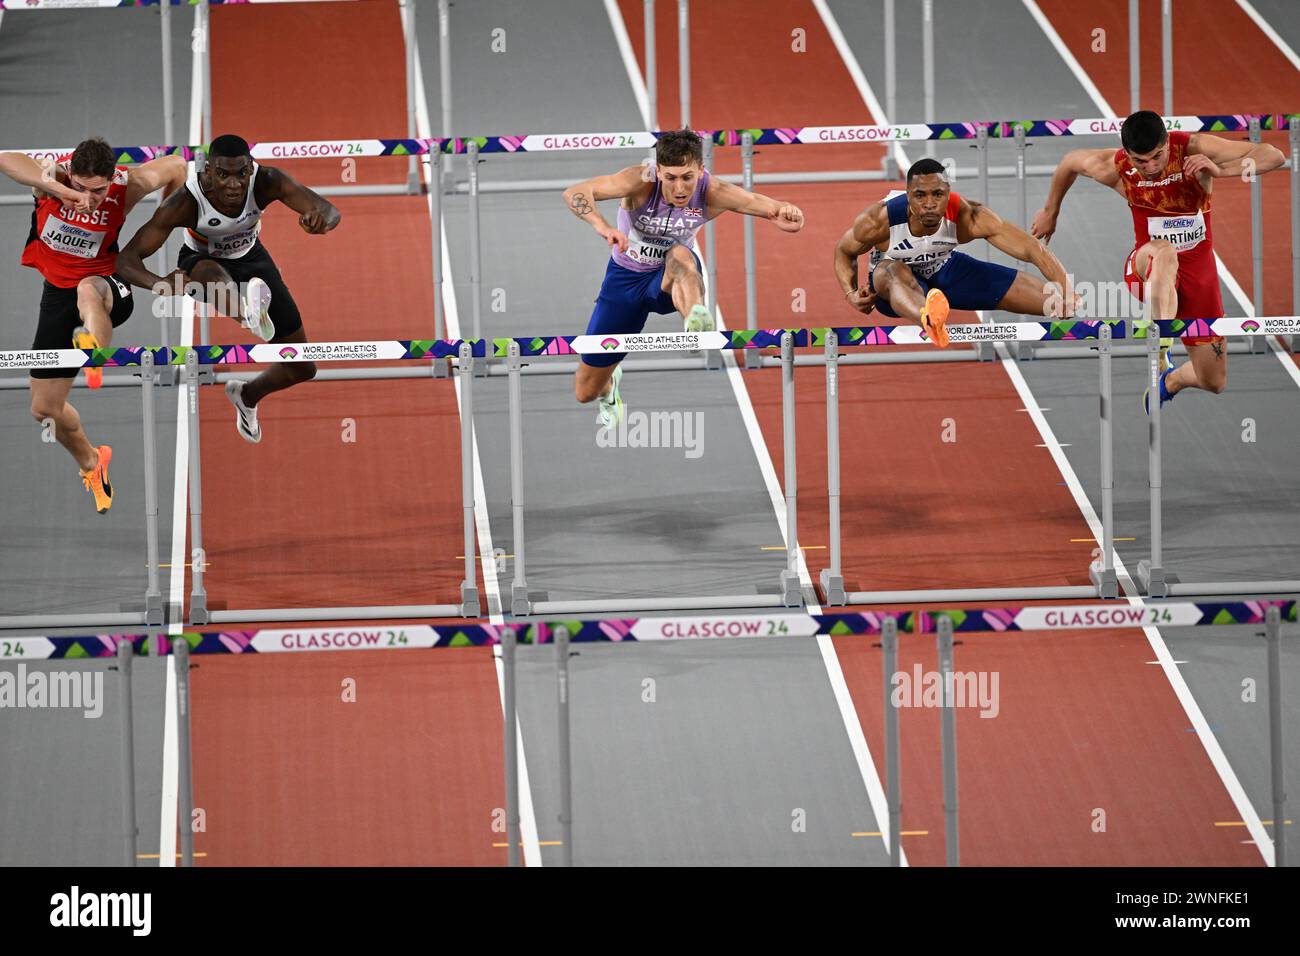 David King (GB), Wilhem Belocian (frankreich), Asier Martinez (Spanien) und Damion Thomas (Jamaika) treten an den 60-m-Hürden der Männer bei der Leichtathletik-Weltmeisterschaft in Glasgow am 2. März 2024 an Stockfoto